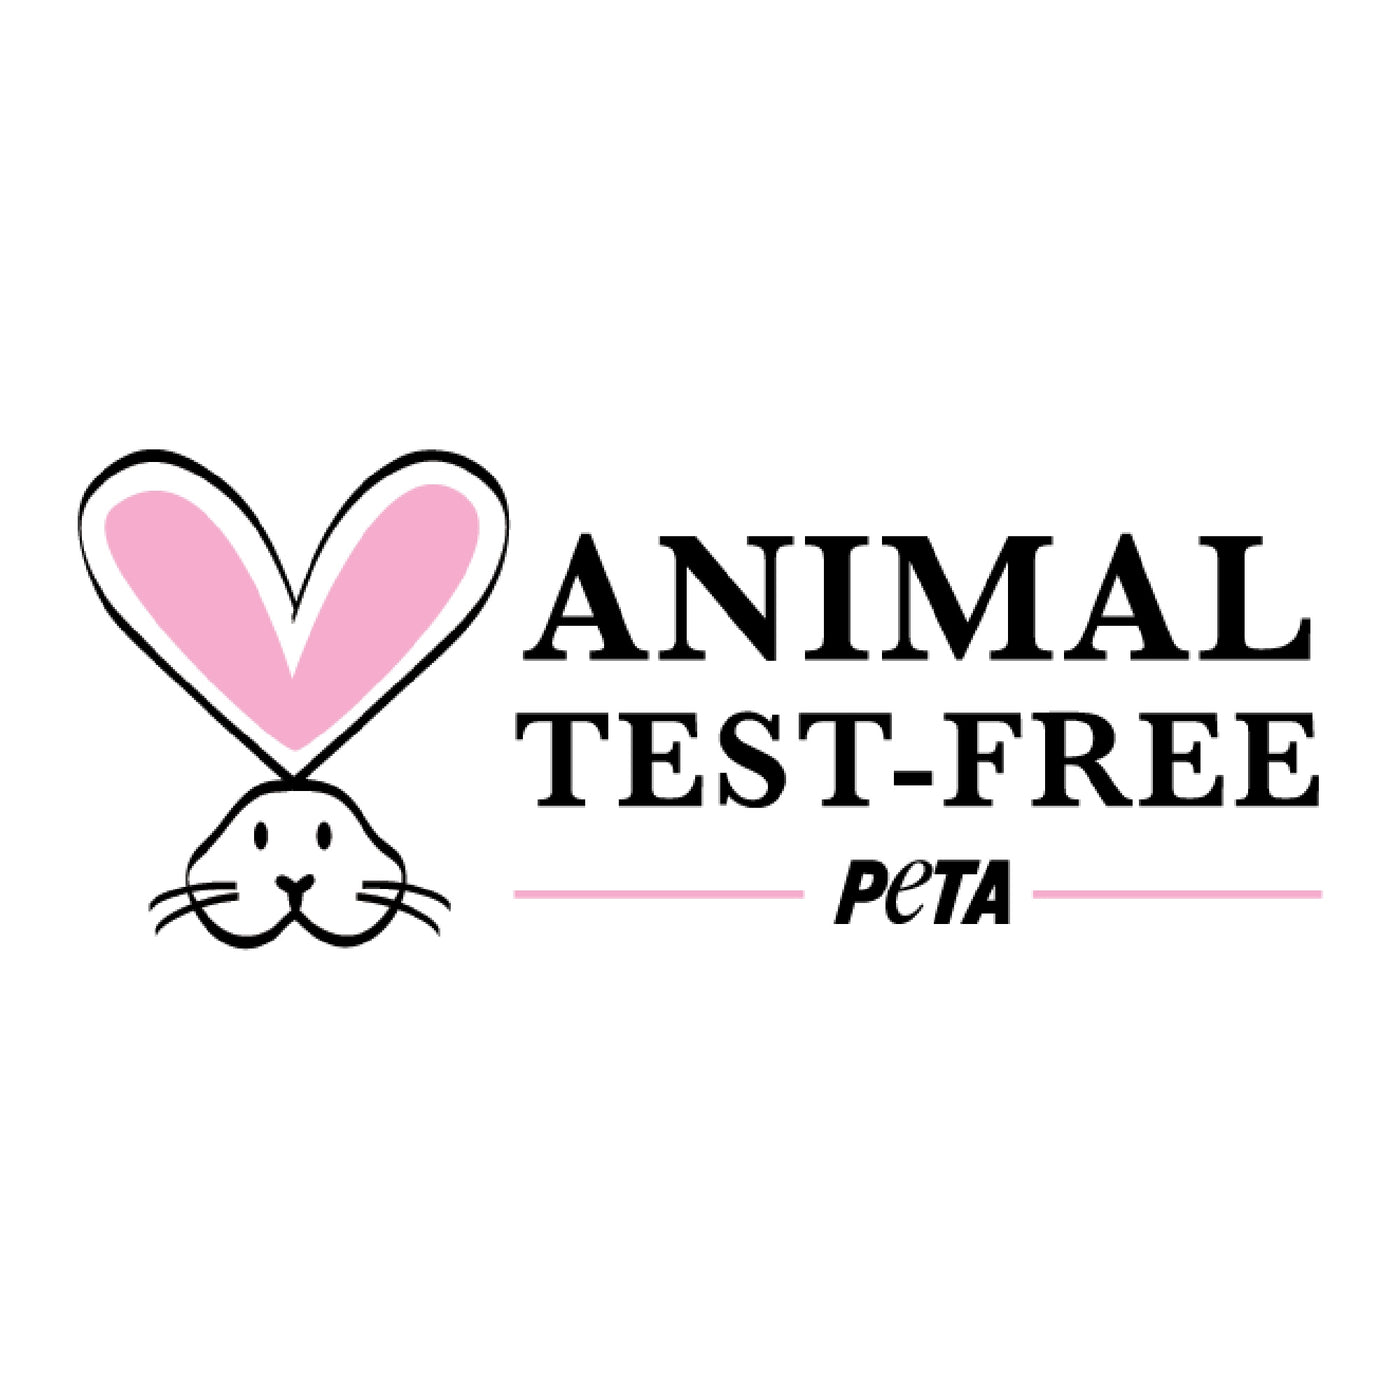 peta animal test free